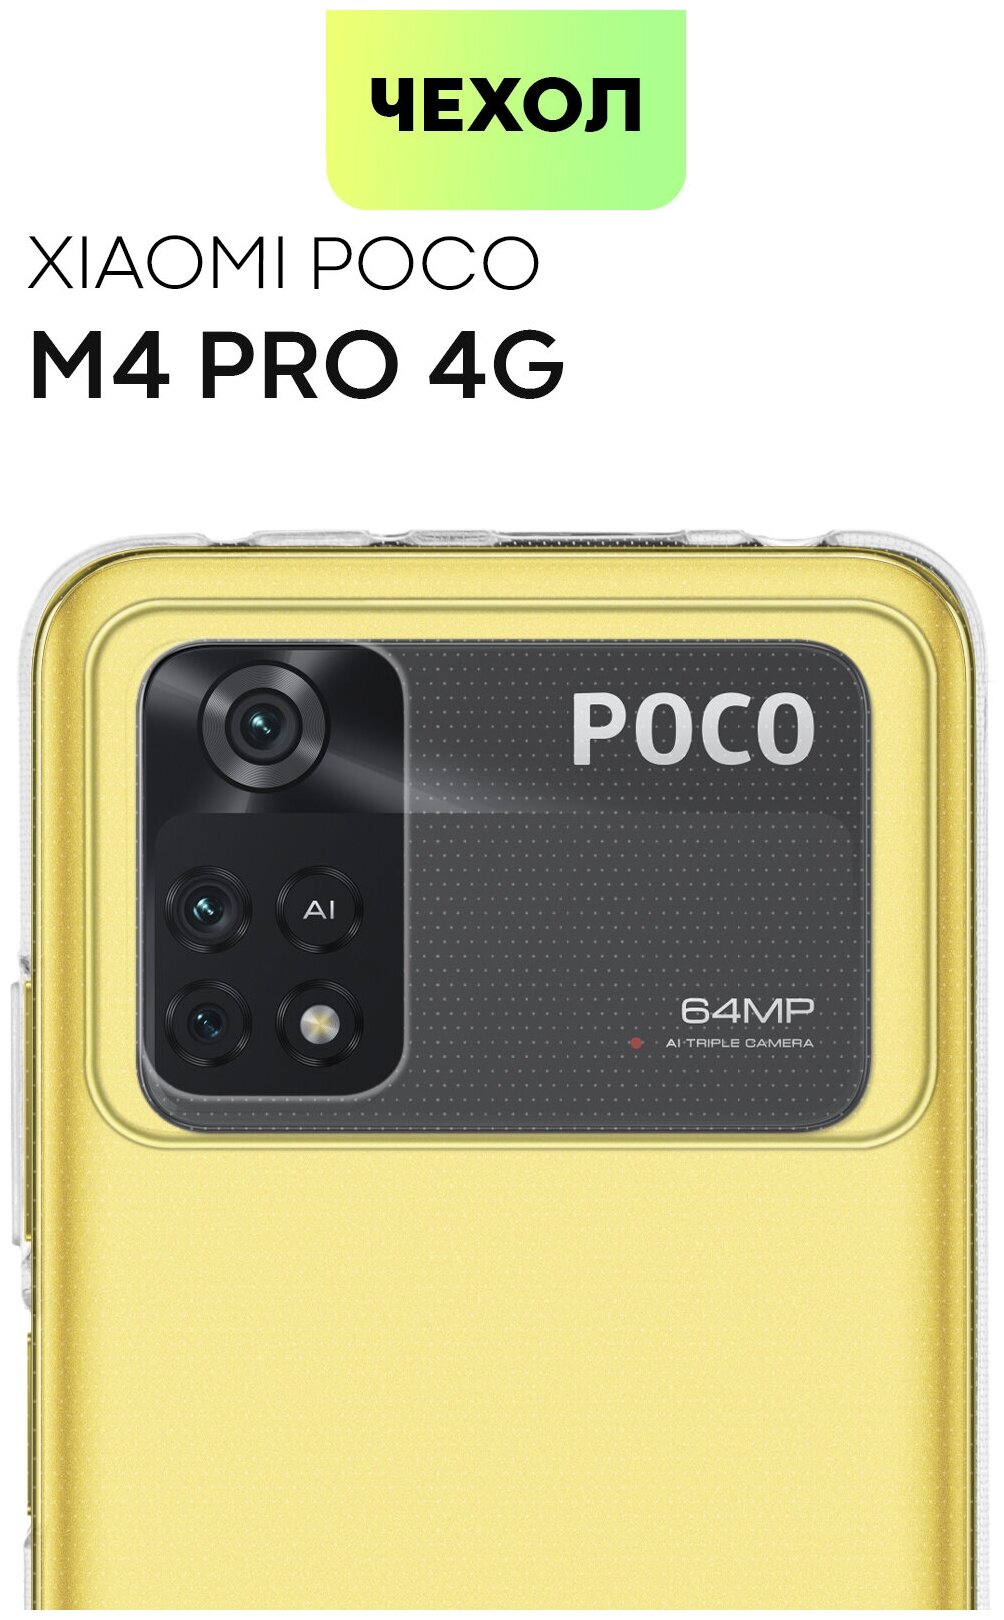 Чехол для Xiaomi Poco M4 Pro 4G (Сяоми Поко М4 Про 4Г, Ксиаоми) тонкий, силиконовый чехол, с бортиком вокруг блока камер, чехол прозрачный, BROSCORP